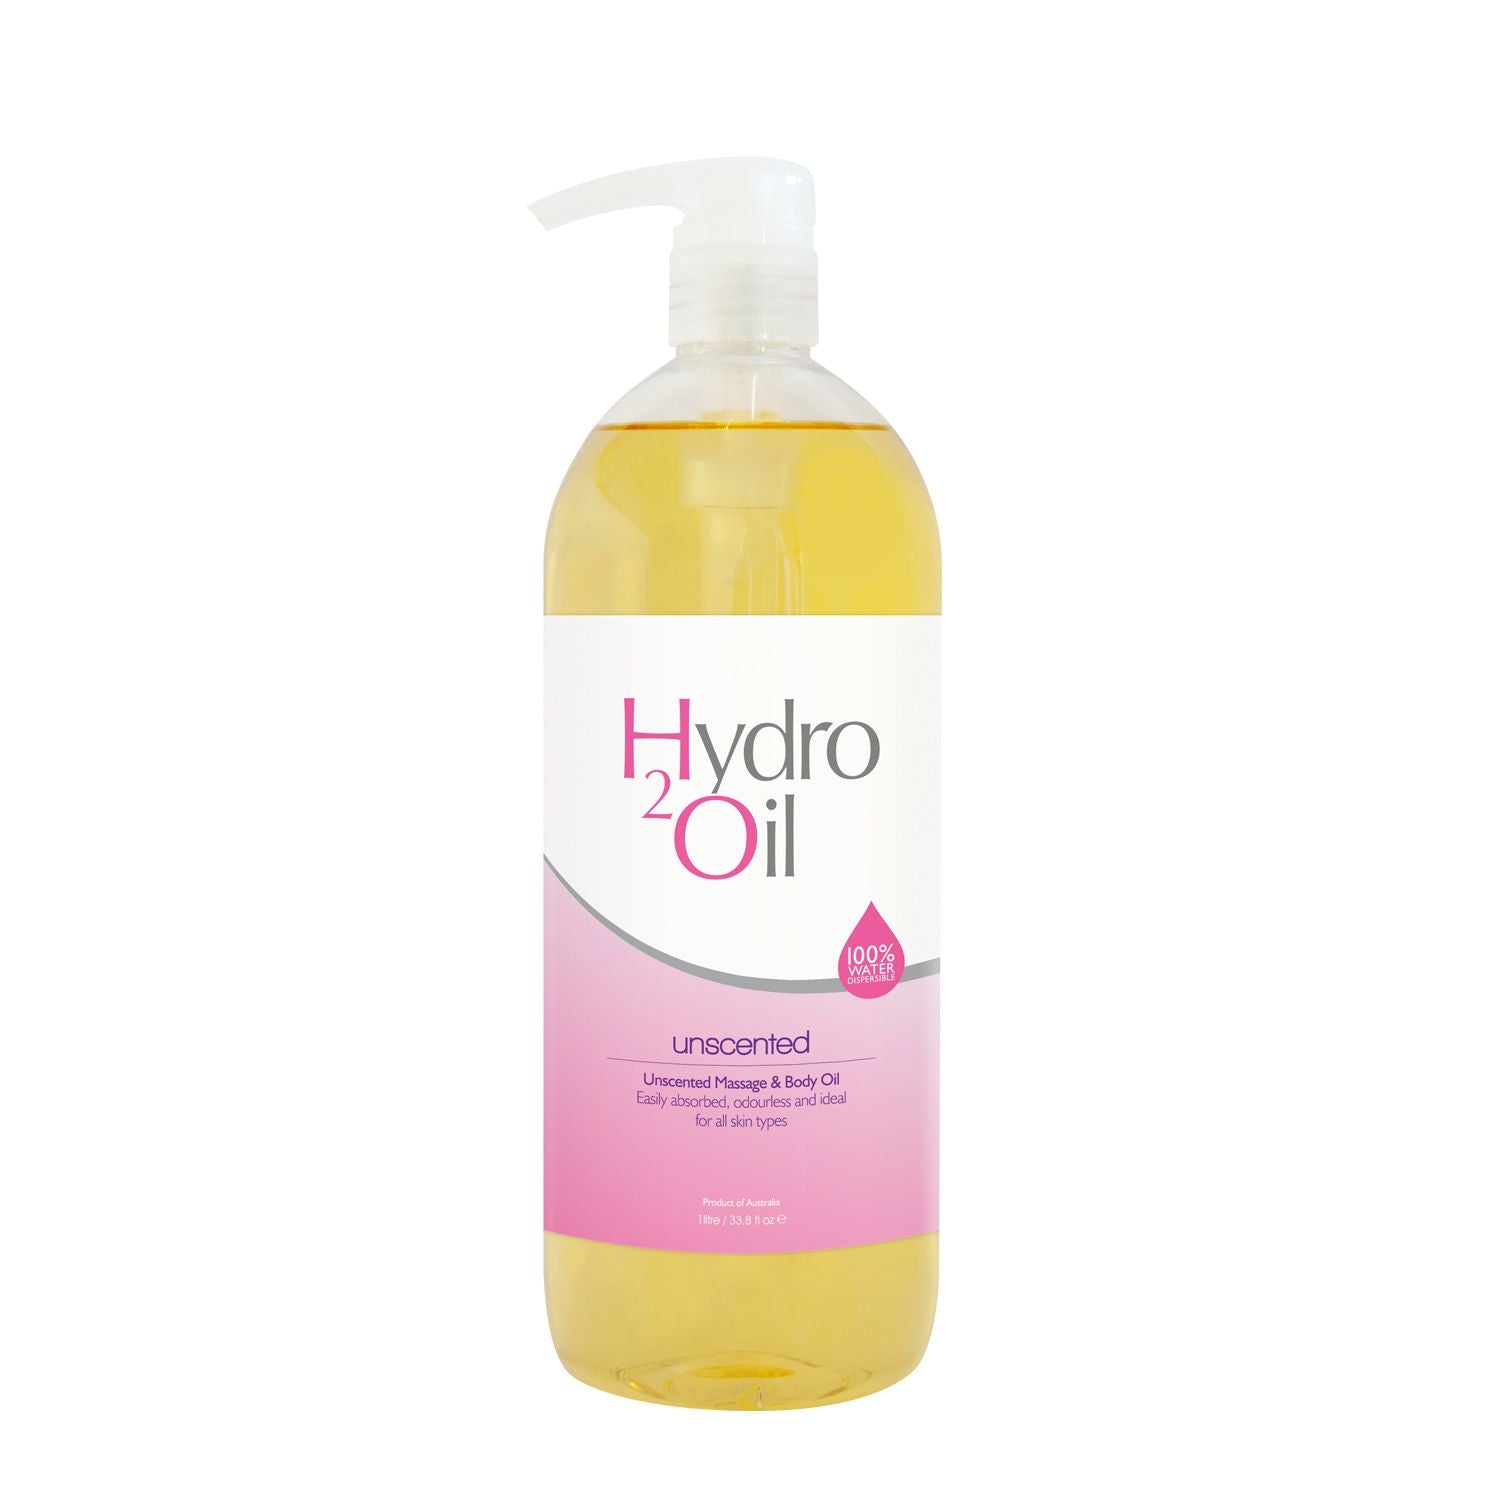 Hydro 2 Oil - Unscented 1L